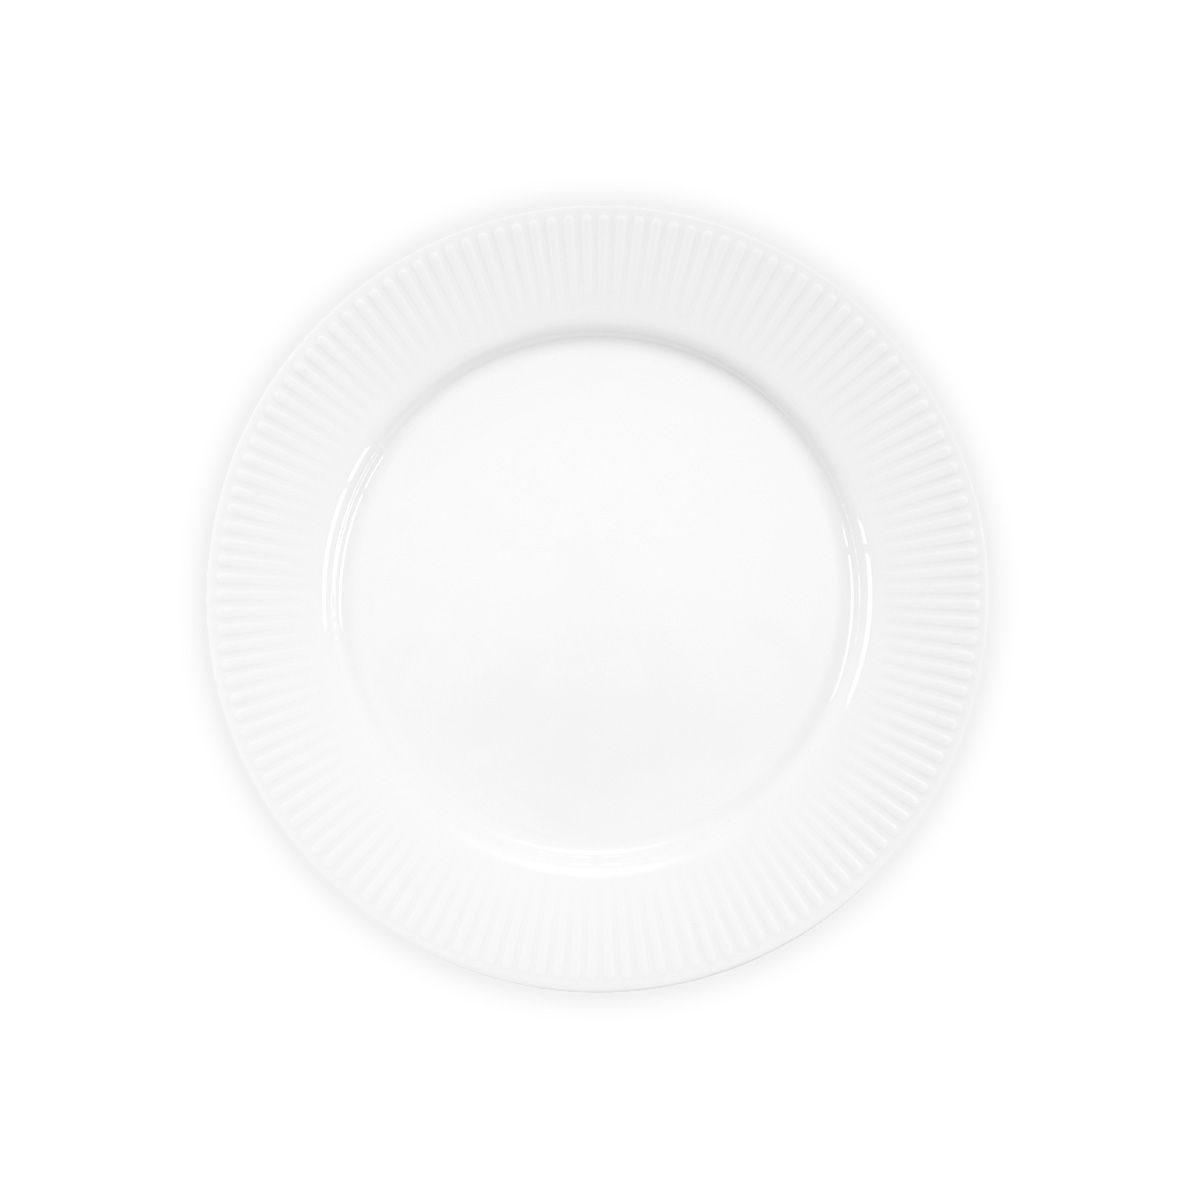 Bodum Douro Lunch Platel Porcelaine Blanc, 4 PCS.